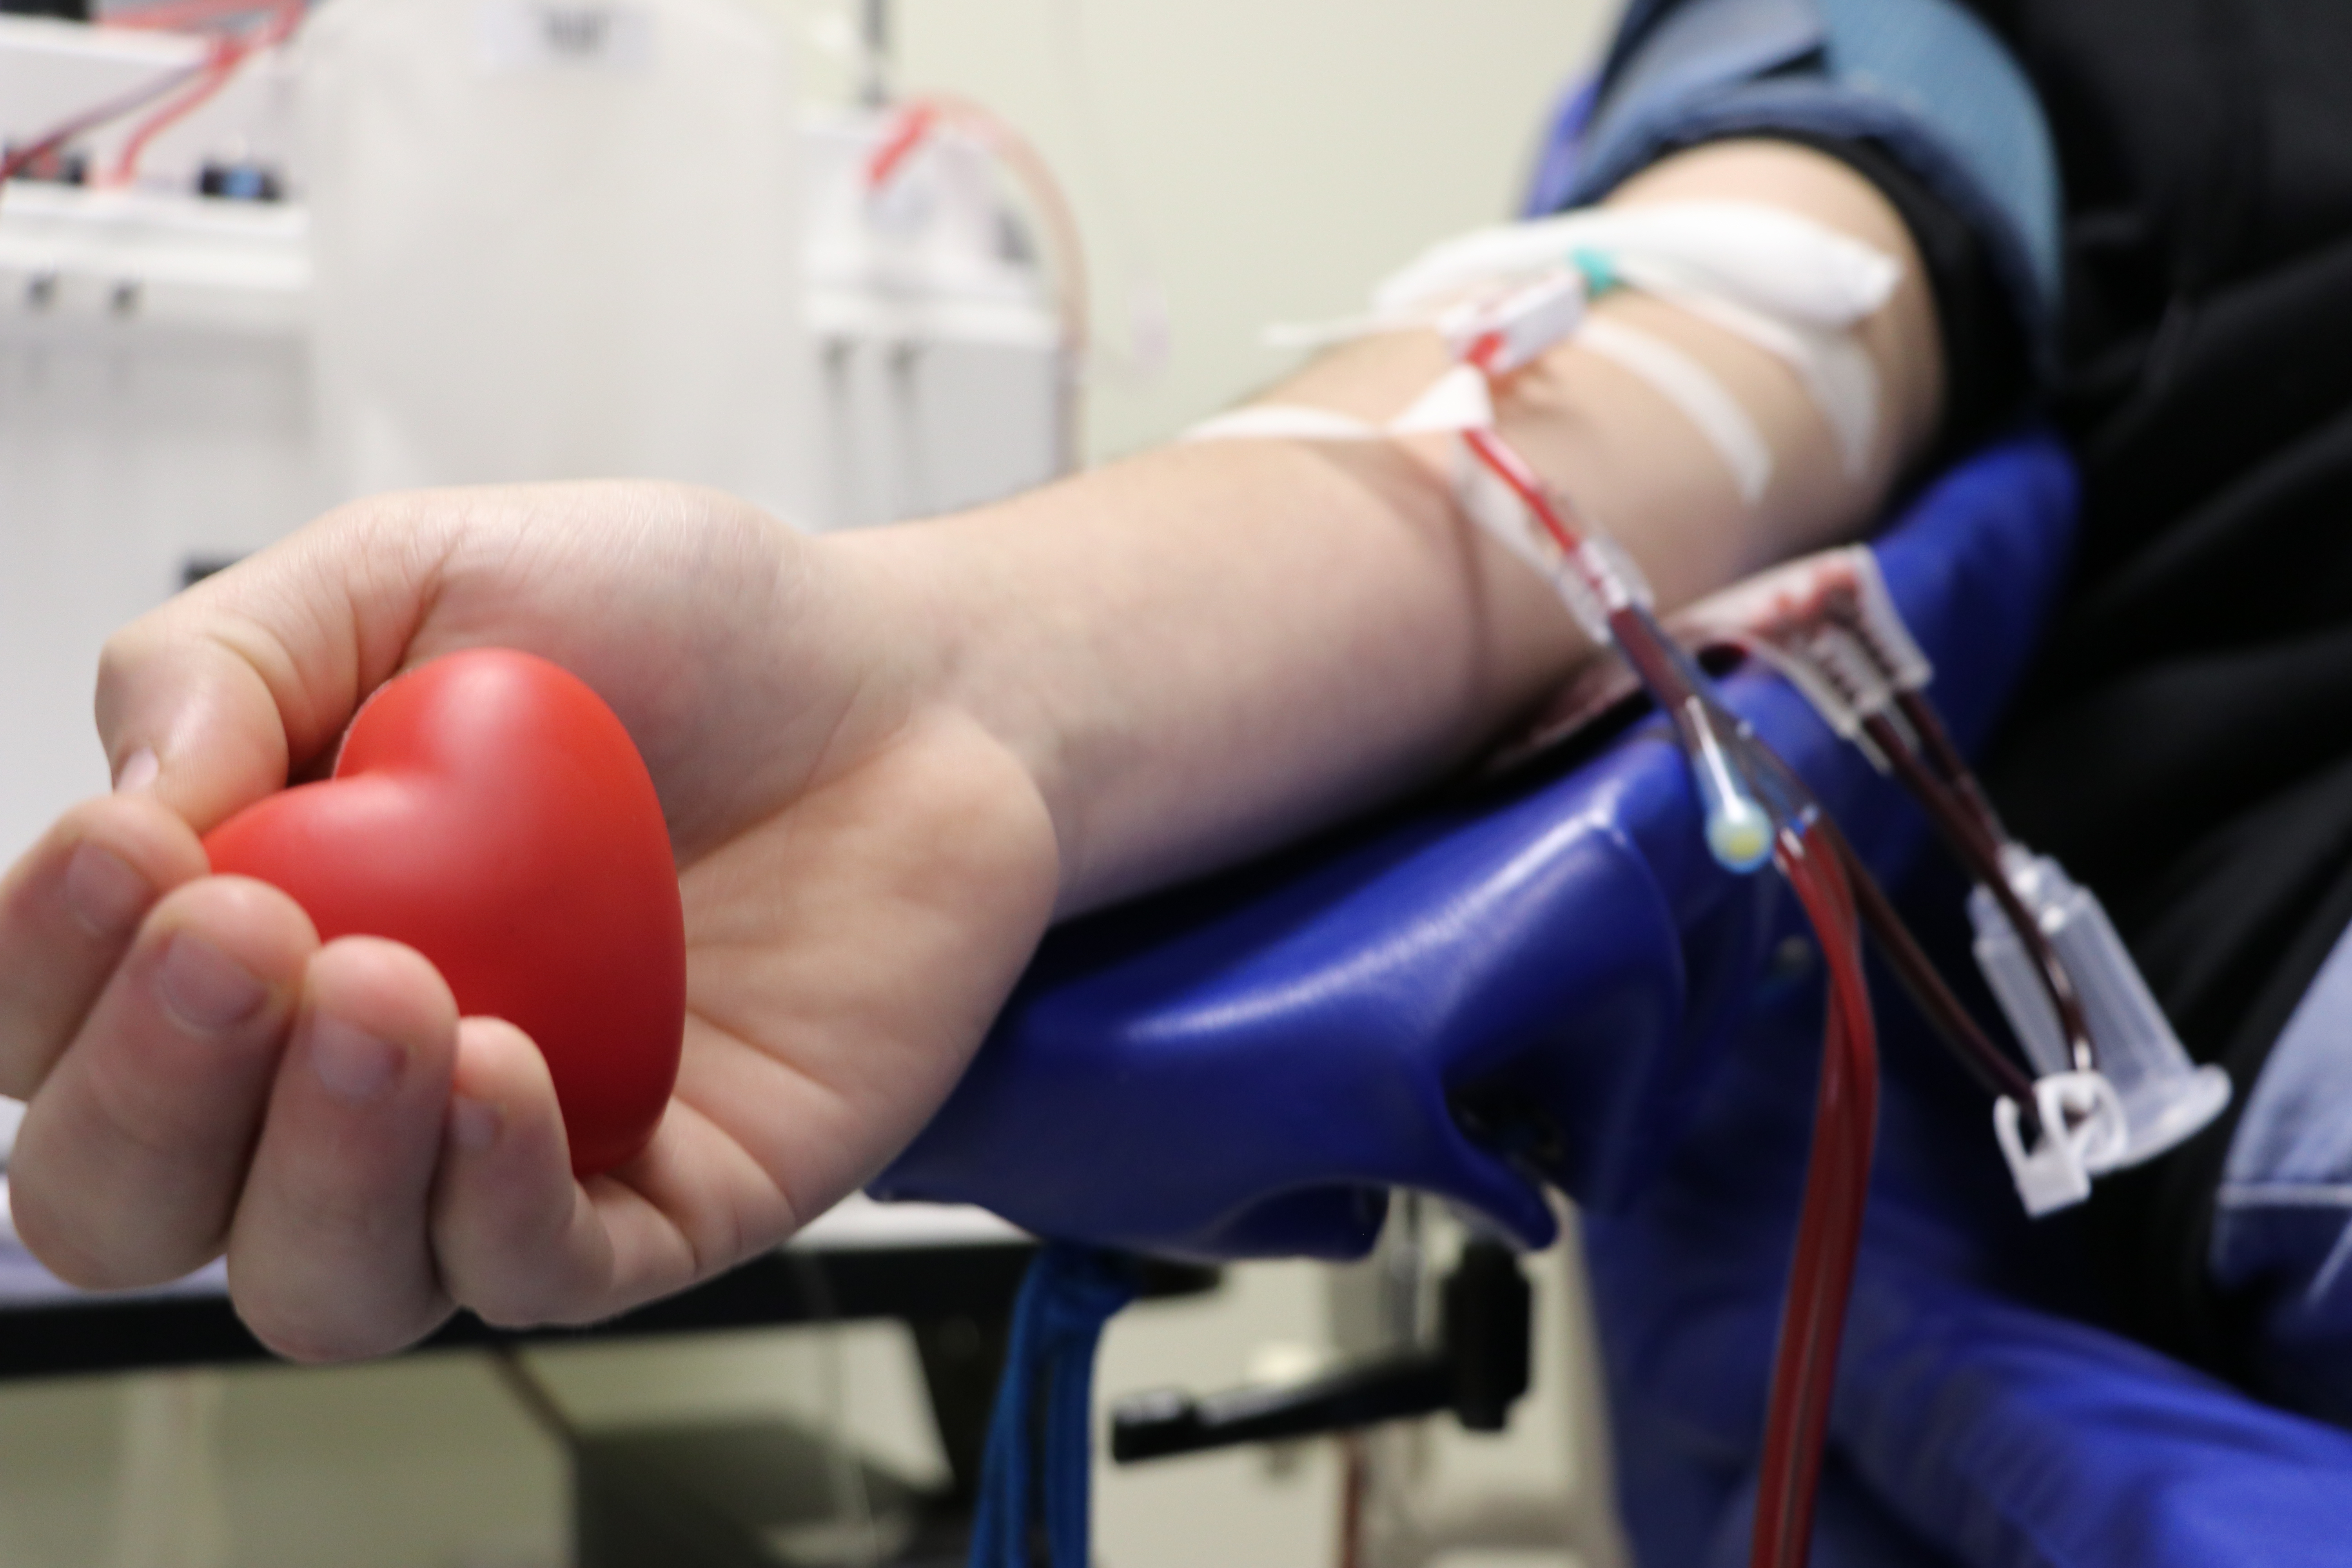 Doar sangue nos faz olhar para o mundo com mais humanidade, relata doador